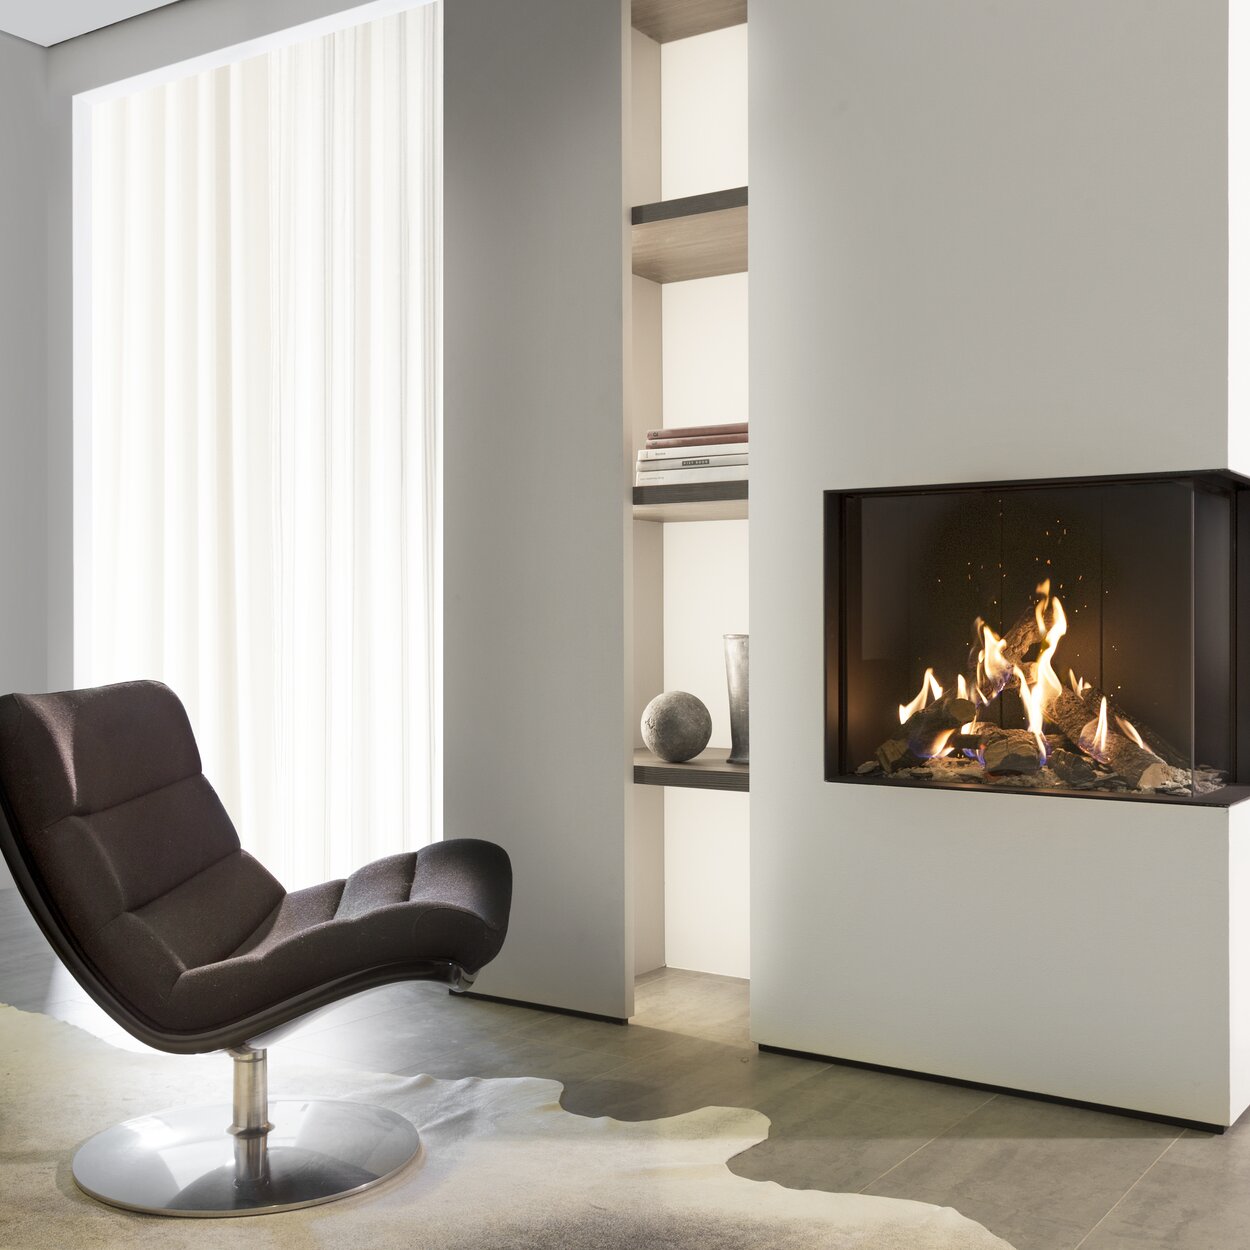 Eckvariante Gas-Kamin GP65/55C mit weisser Verkleidung im schlichten und hellen Wohnzimmer mit Sessel